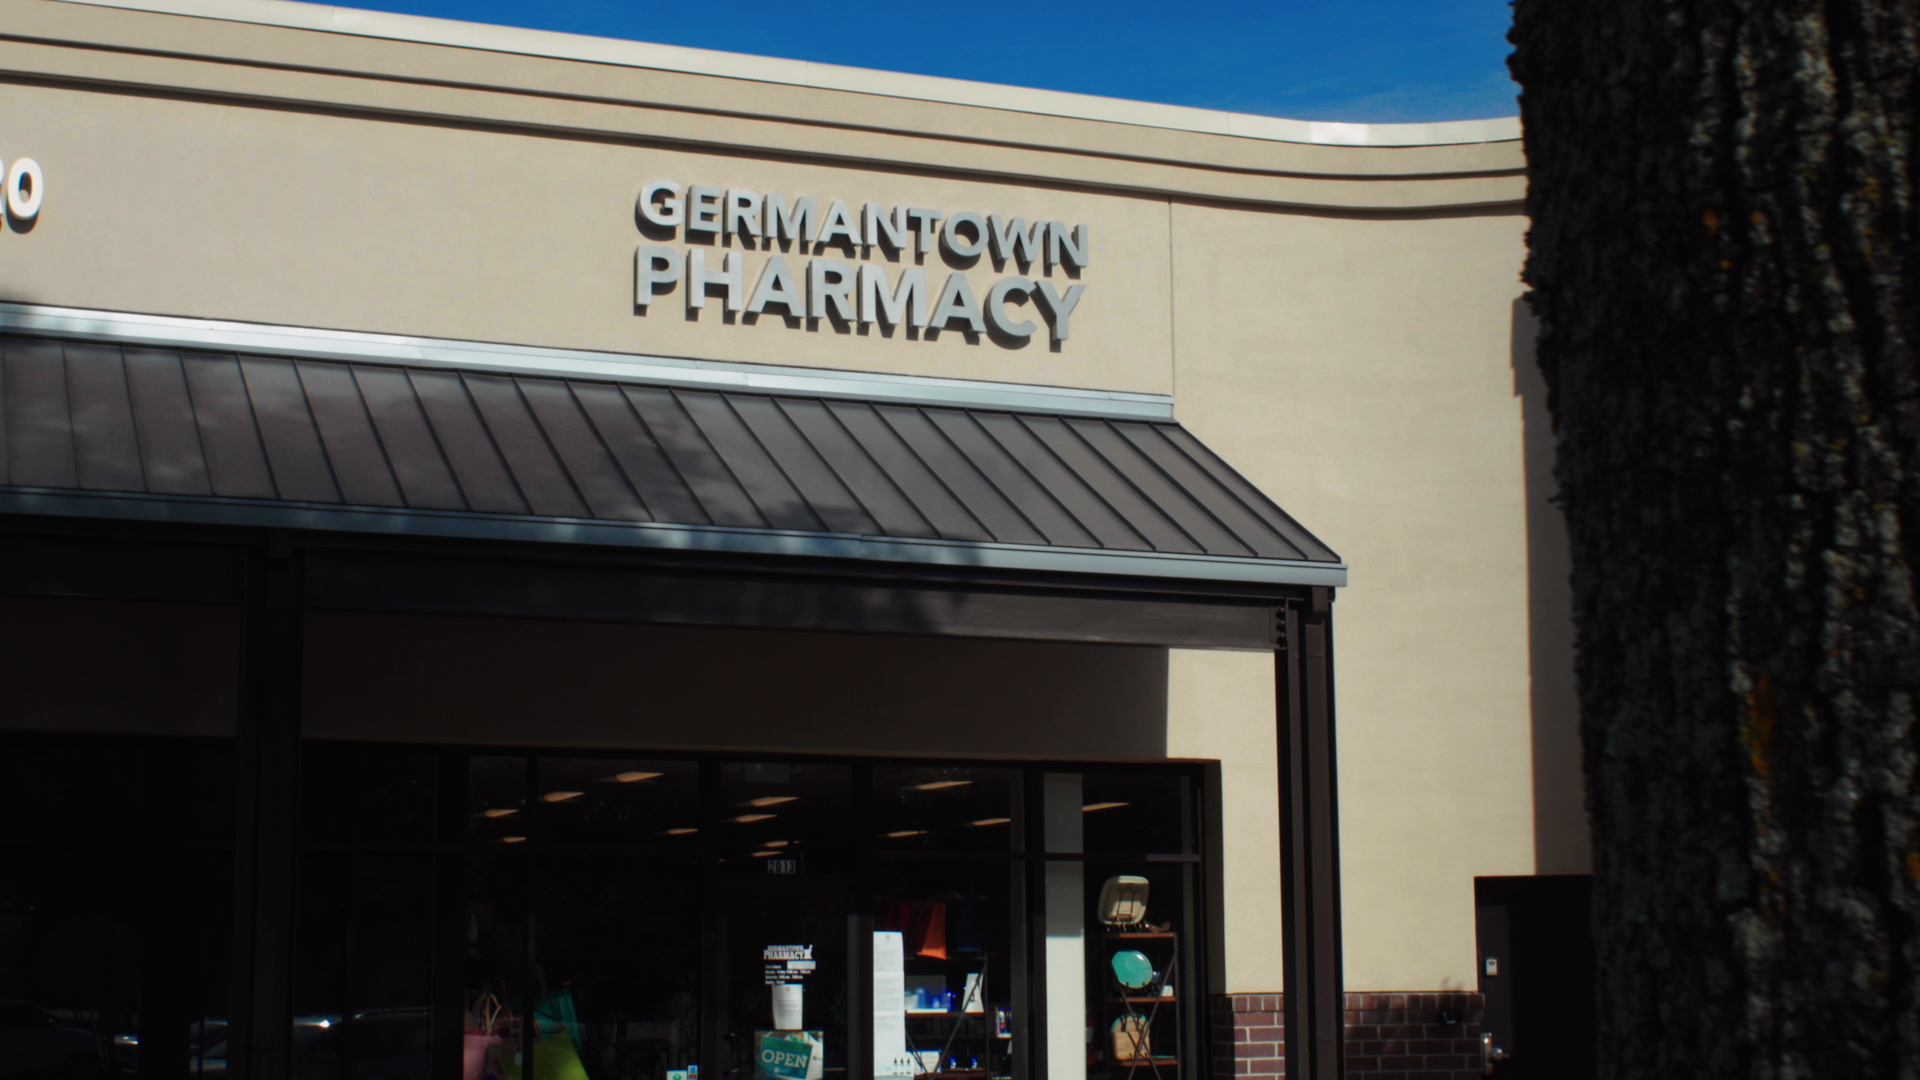 Germantown Pharmacy